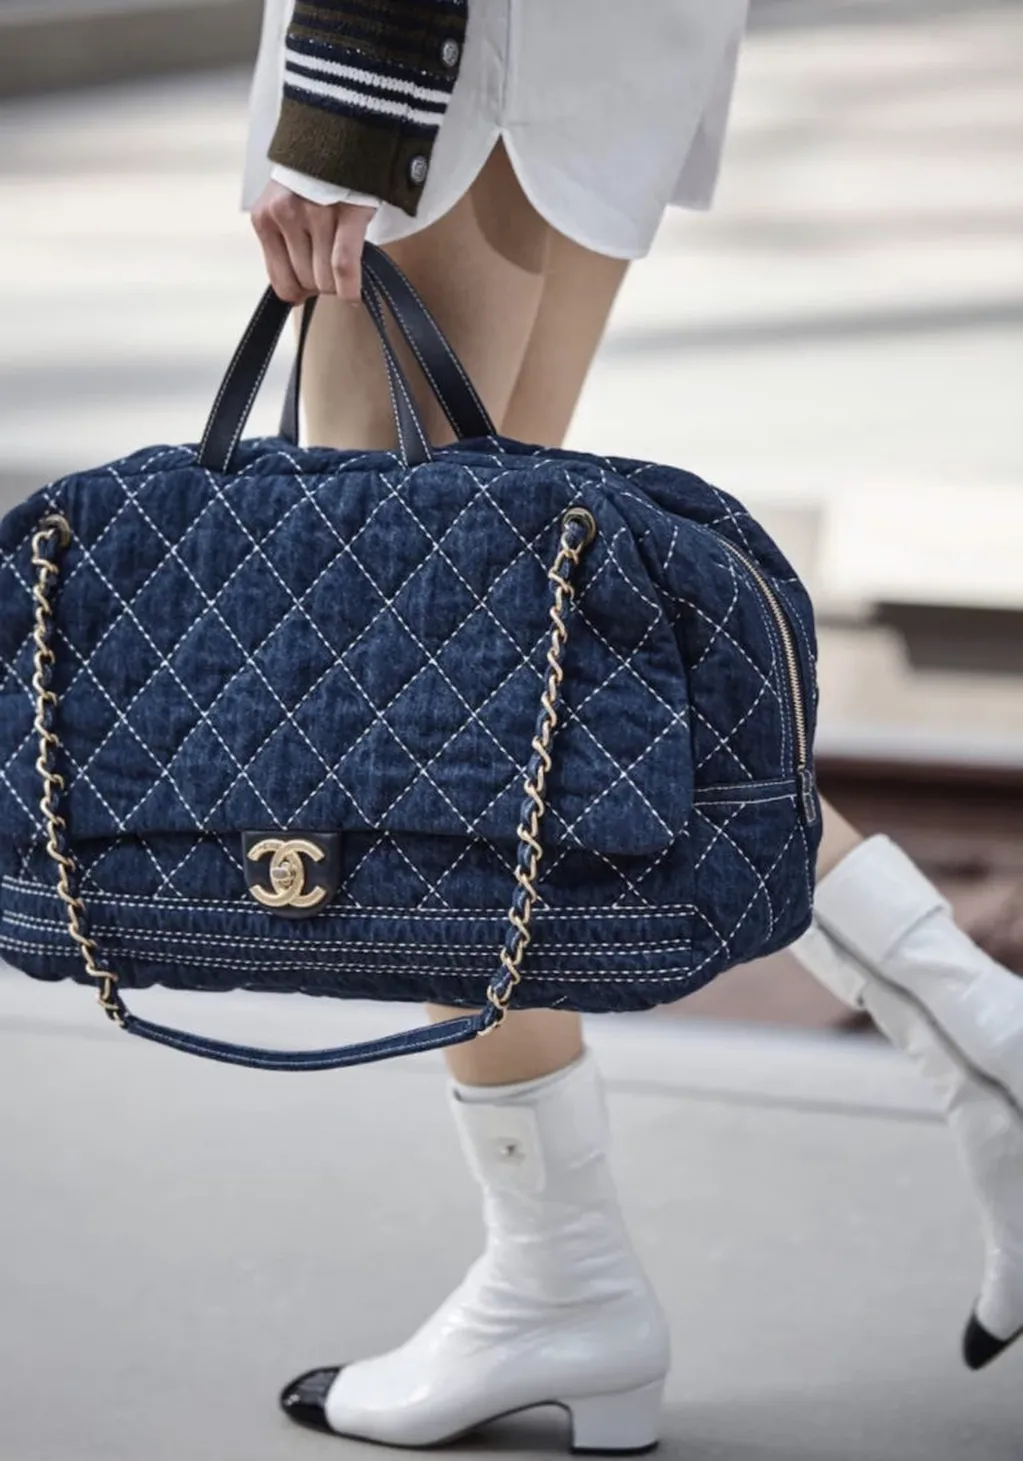 Este es el bolso Chanel de Wanda Nara.